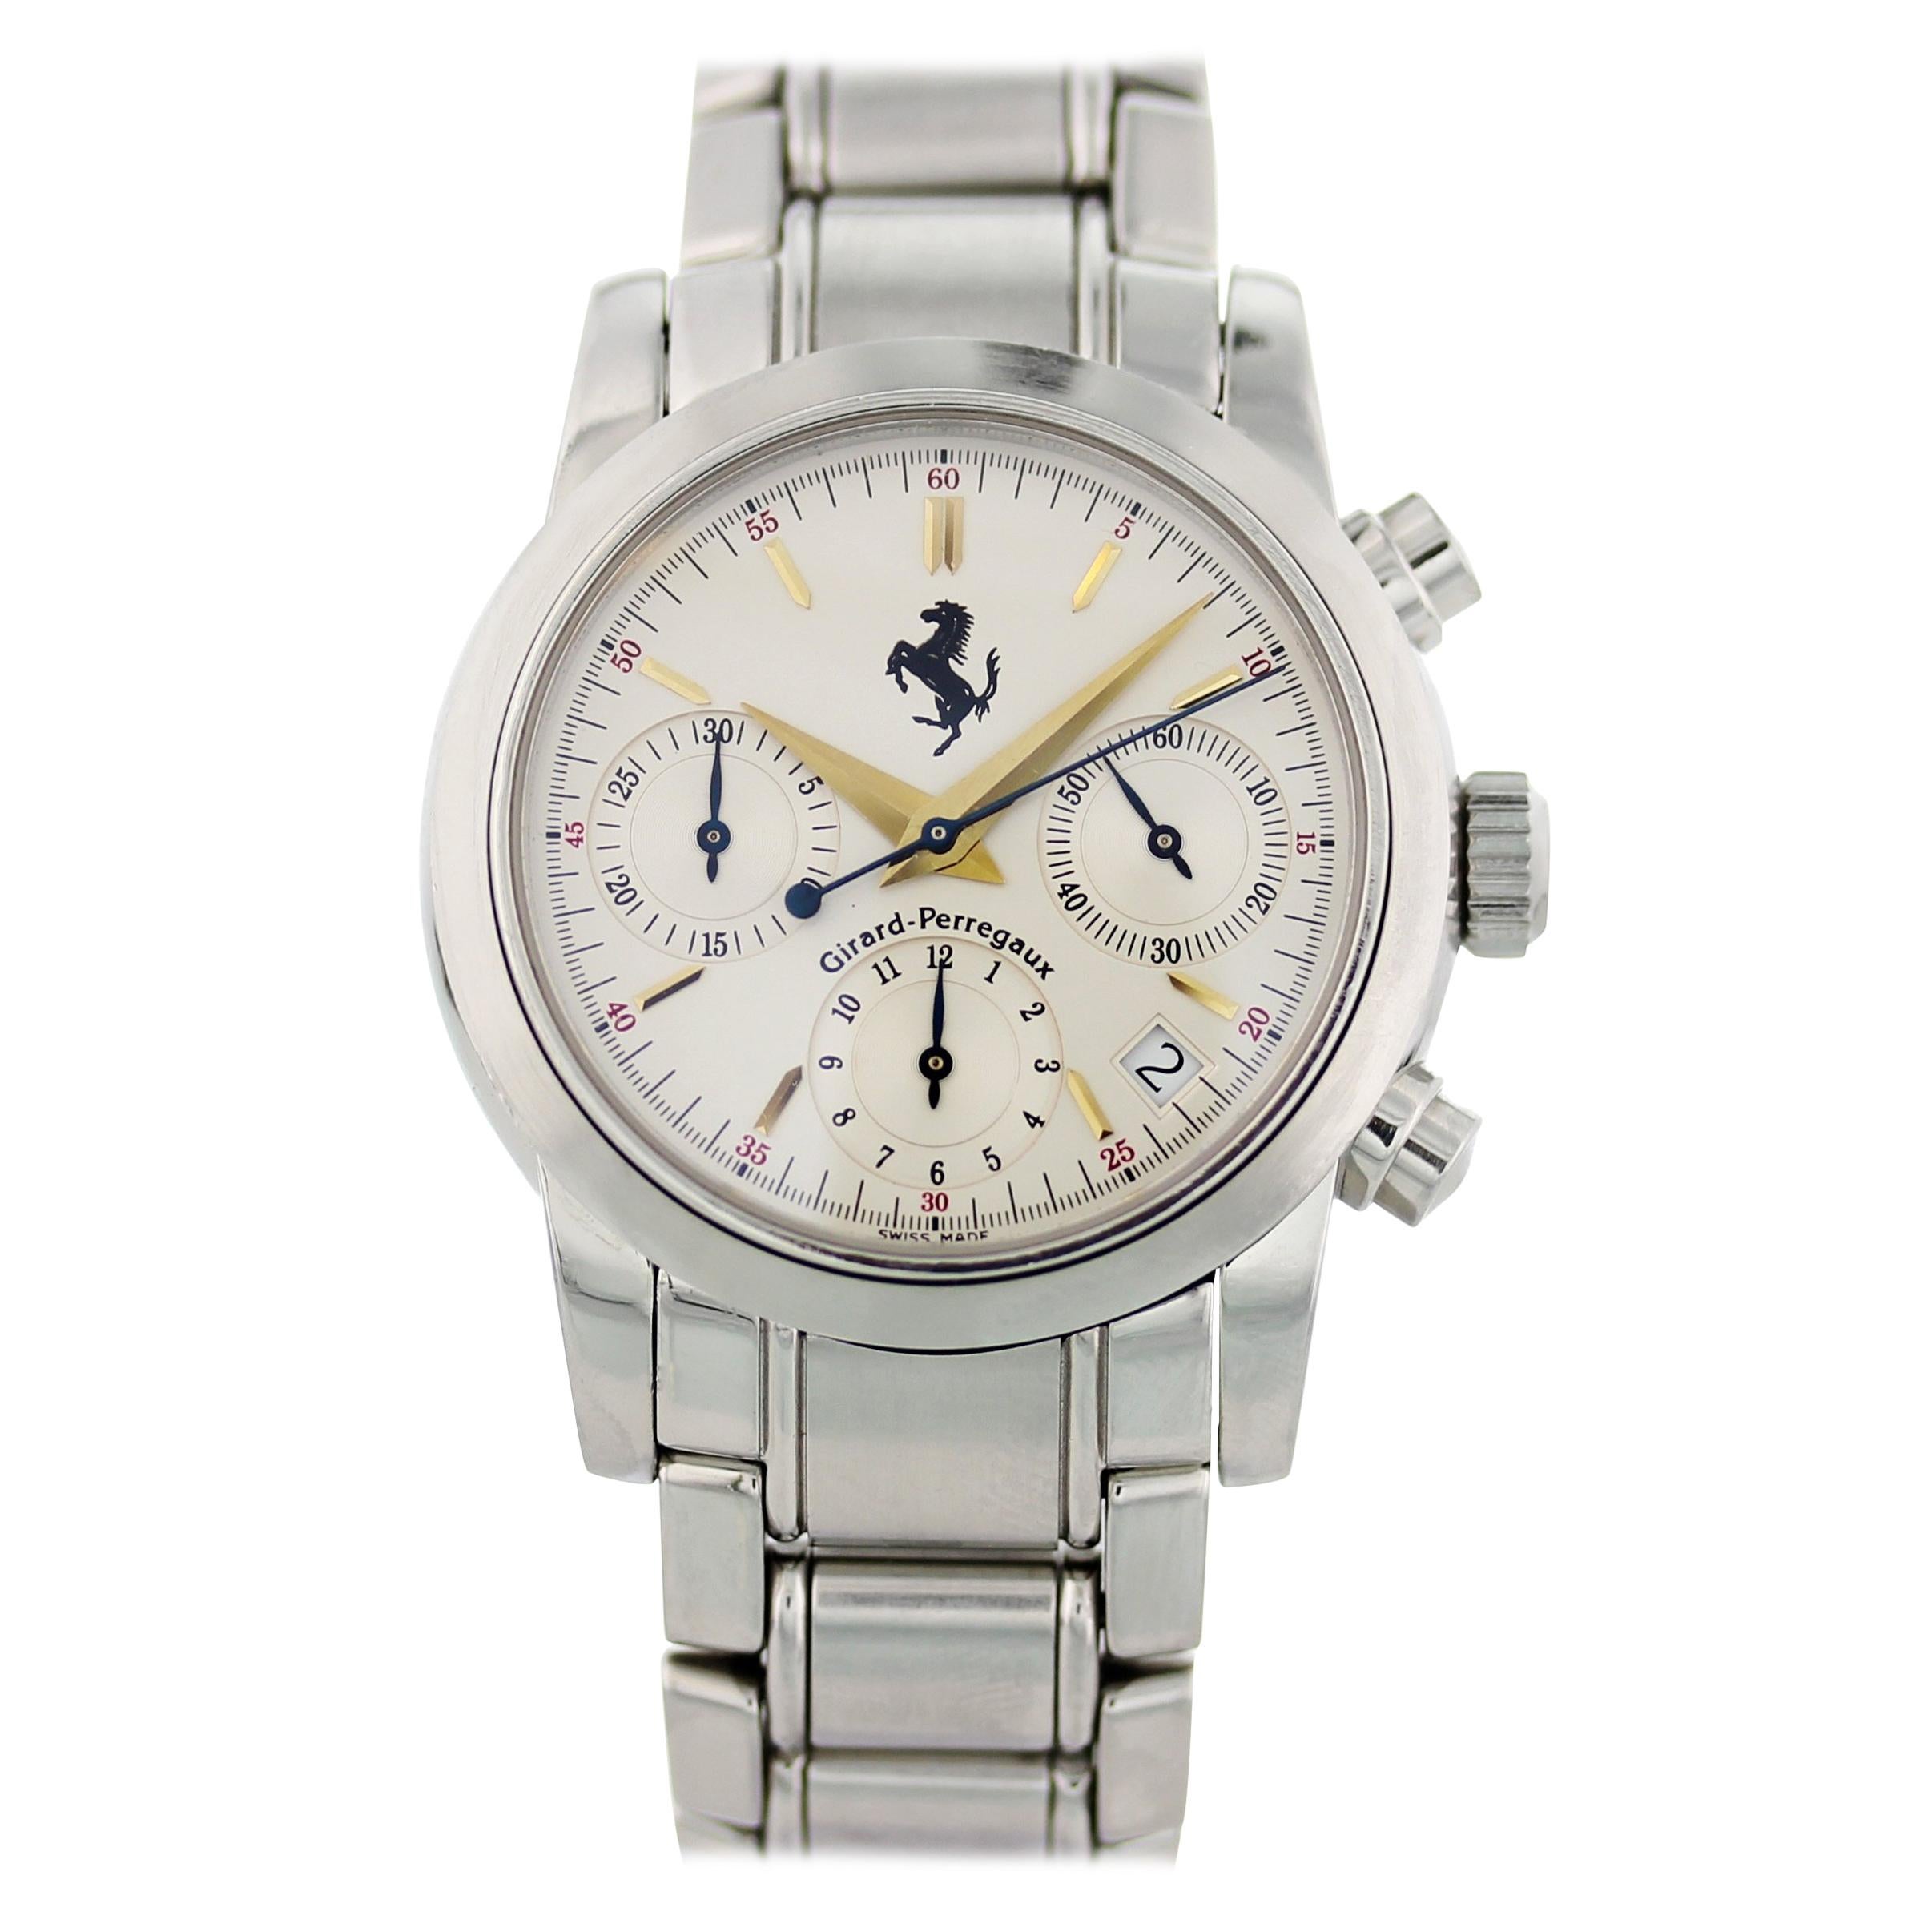 Girard Perregaux Ferrari Chronograph 8020 Men's Watch